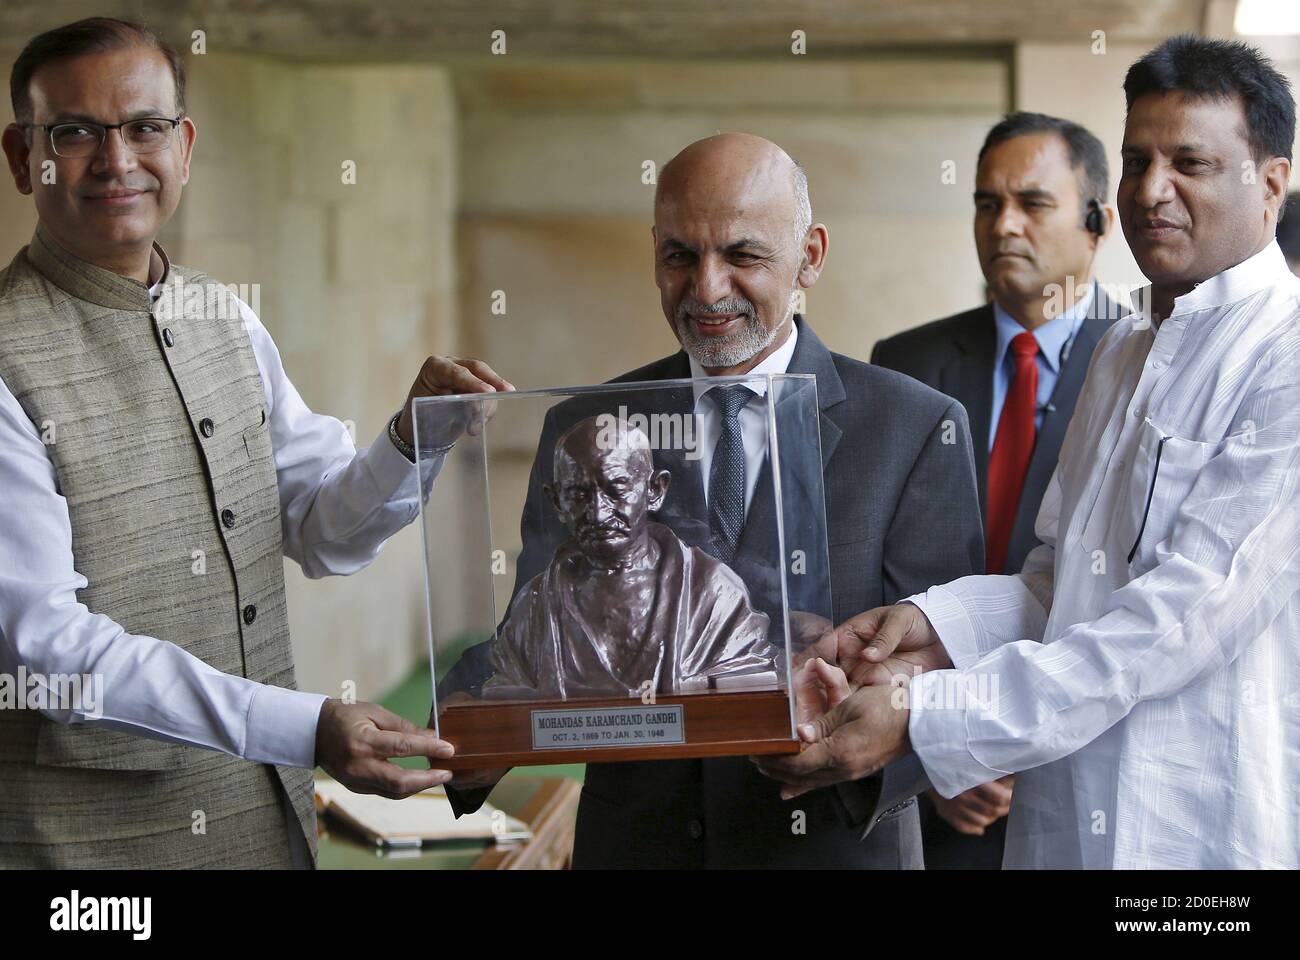 El presidente de Afganistán, Ashraf Ghani (C), recibe un busto de Mahatma Gandhi del subministro de finanzas de la India, Jayant Sinha (L), durante su visita al monumento conmemorativo de Mahatma Gandhi en Rajghat, Nueva Delhi, India, el 28 de abril de 2015. Ghani pidió el martes cooperación regional para derrotar a grupos extremistas violentos, diciendo después de reunirse con el primer ministro indio que quiere "hacer de Afganistán un cementerio de terror", pero necesita ayuda de la India, Pakistán y otros vecinos. REUTERS/Anindito Mukherjee Foto de stock